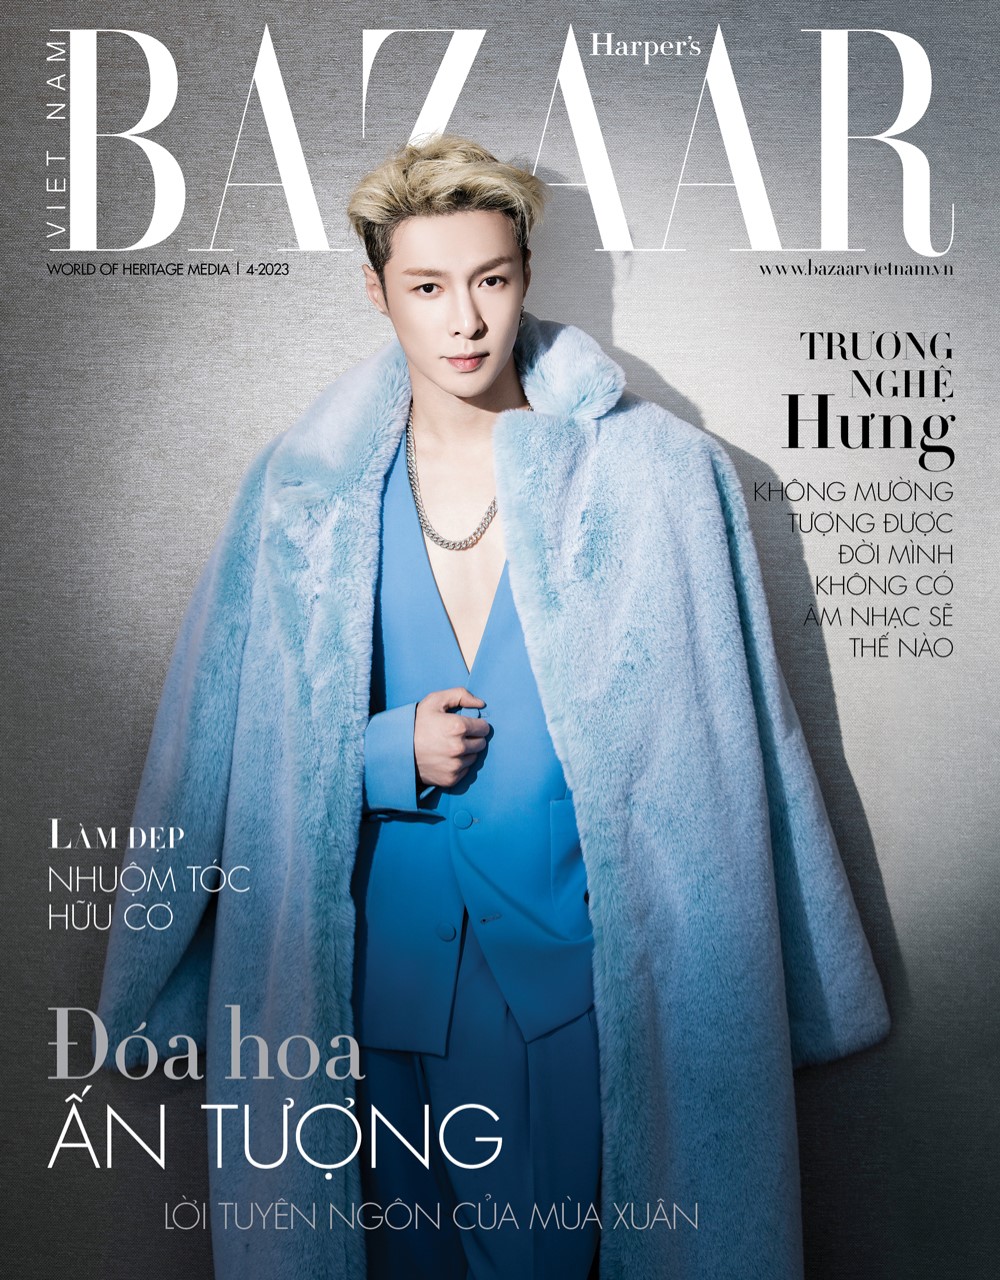 Trương Nghệ Hưng trên trang bìa Harper’s Bazaar Việt Nam 4/23